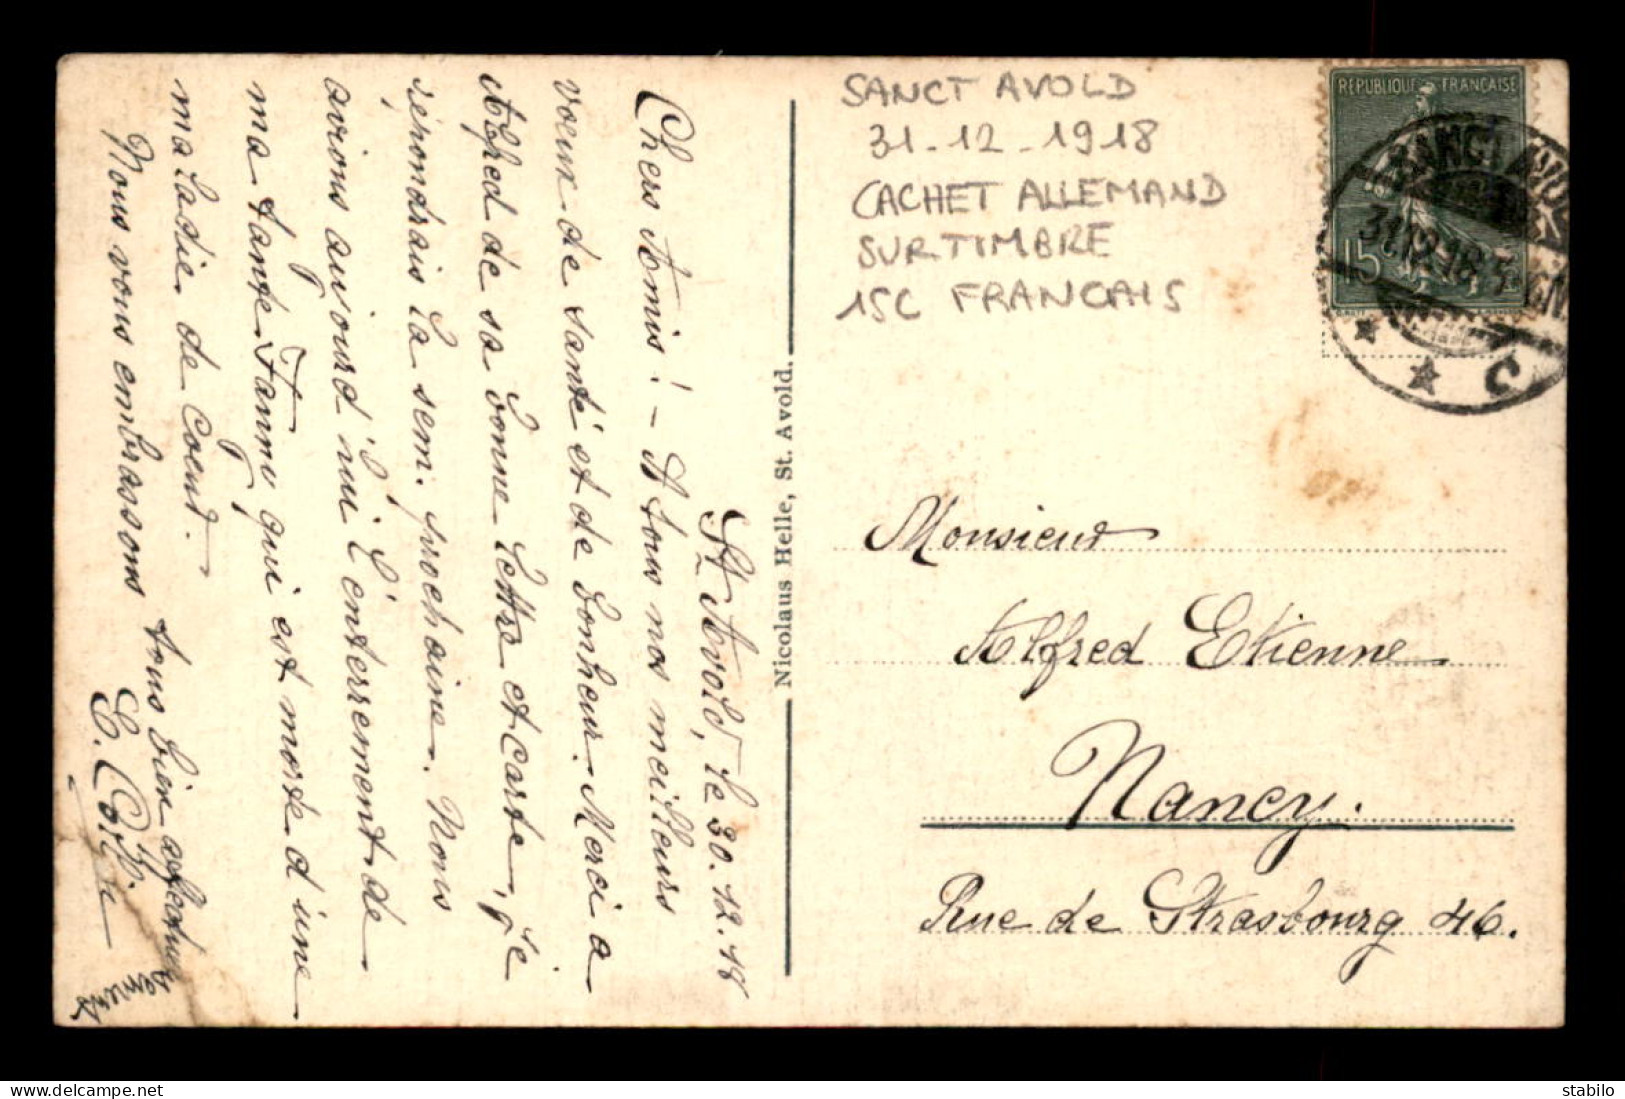 CACHET ALLEMAND "SANCT AVOLD" DU 31.12.1918 SUR TIMBRE FRANCAIS DE 15 CENTIMES - Aushilfsstempel